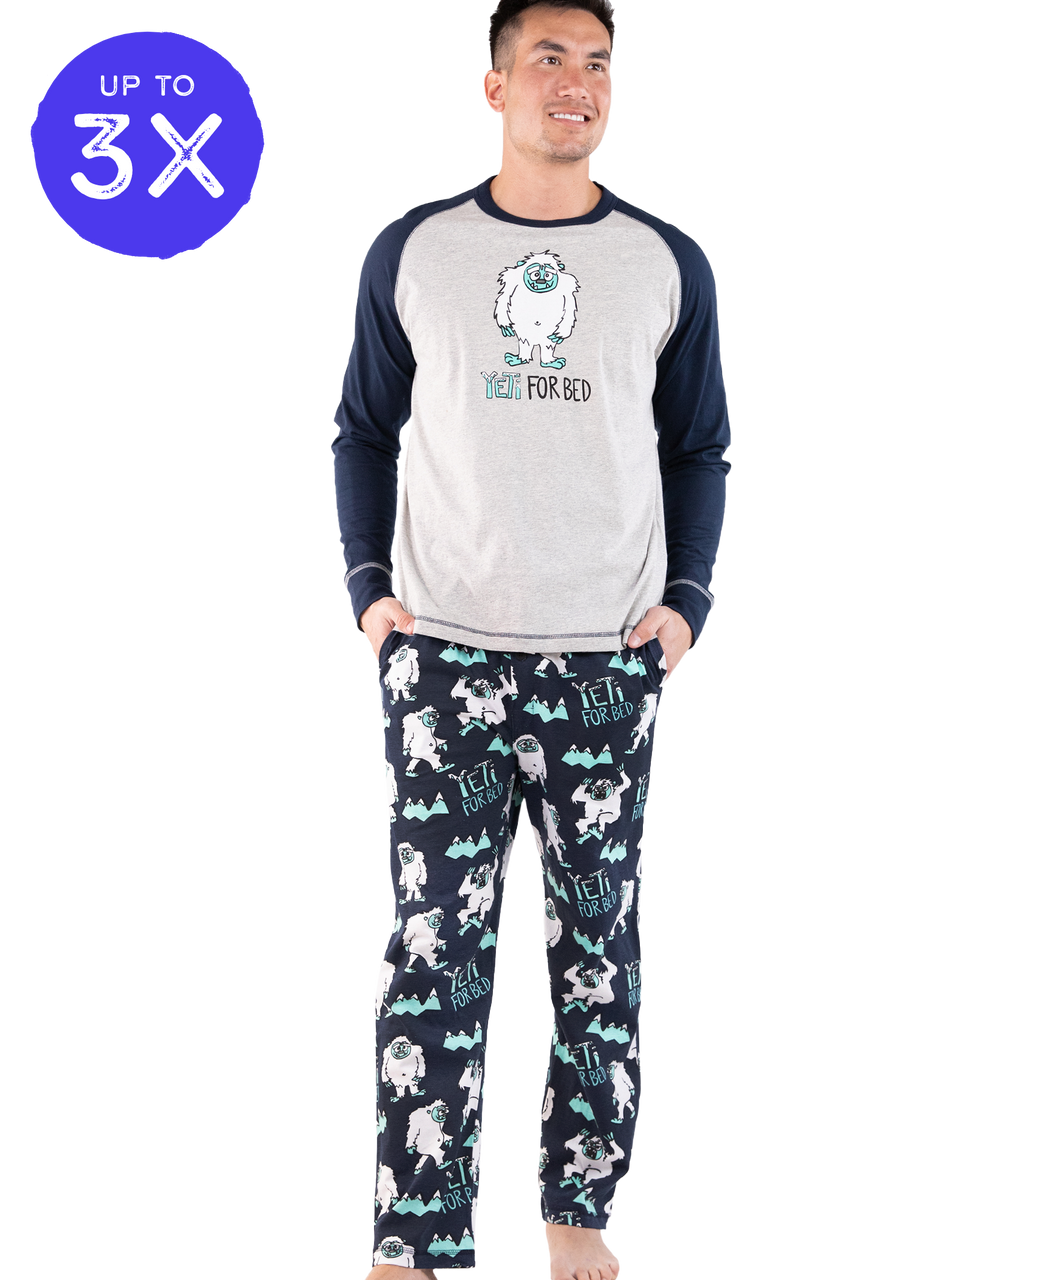 Yeti For Bed Men's Long Sleeve Pajama Set